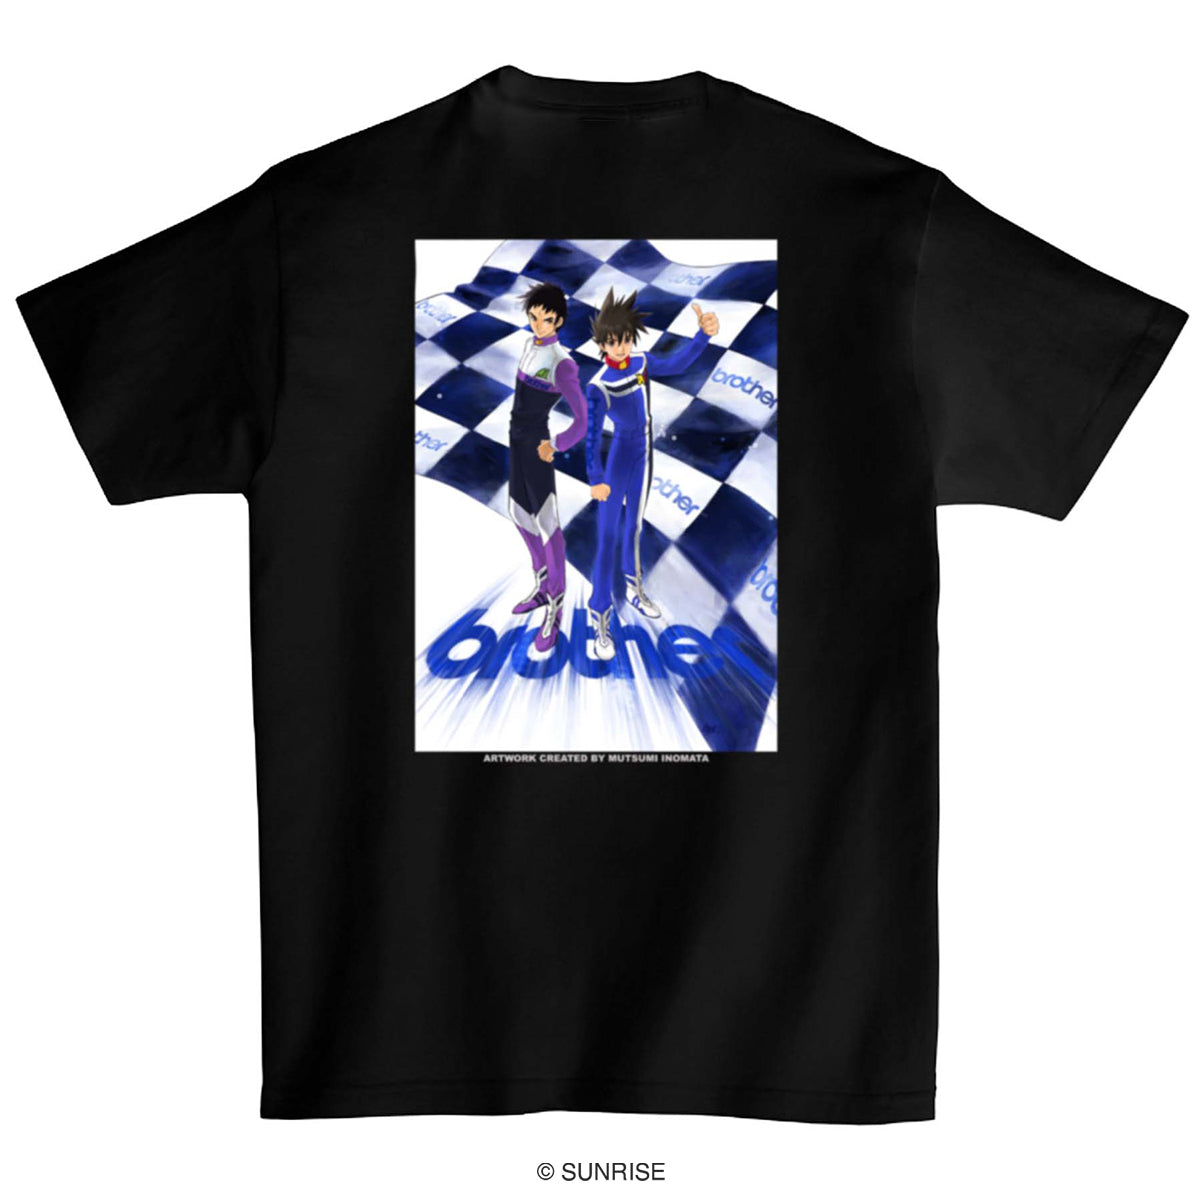 《高智能方程式》名古屋GP いのまたむつみキービジュアル 原画 T-shirt